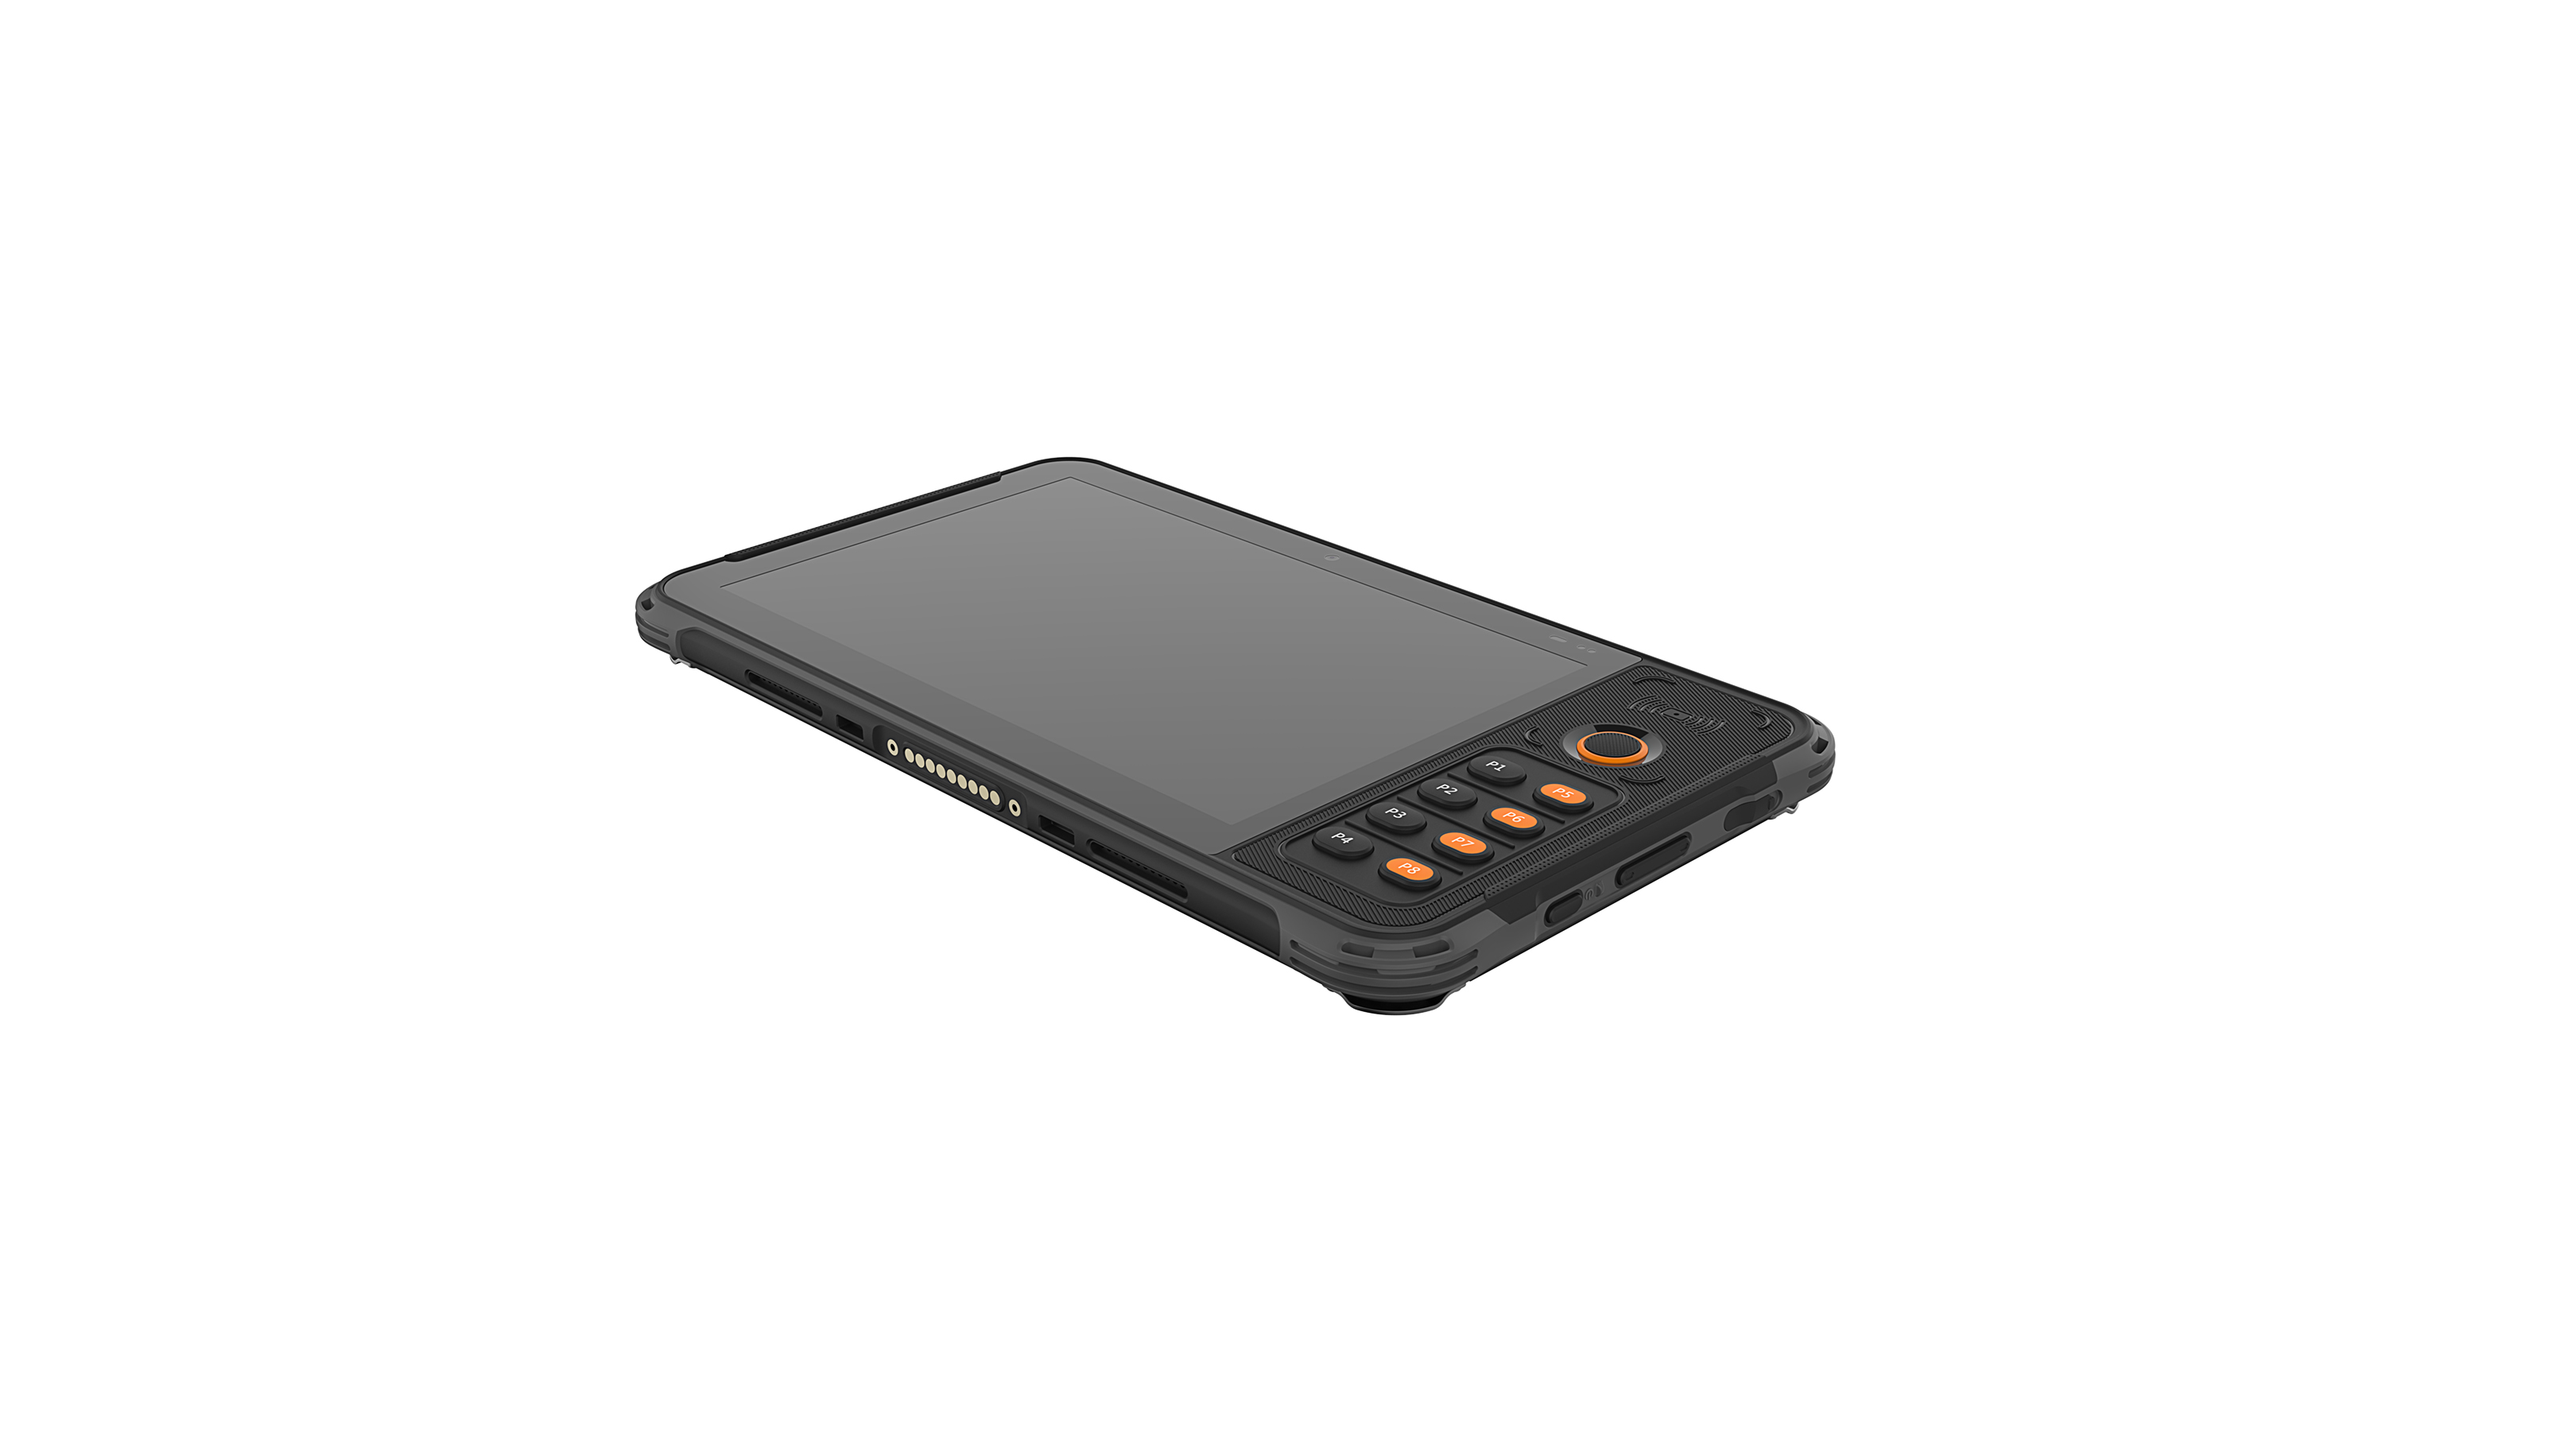 Защищённый планшет промышленного класса со сканером штрихкодов UROVO P8100